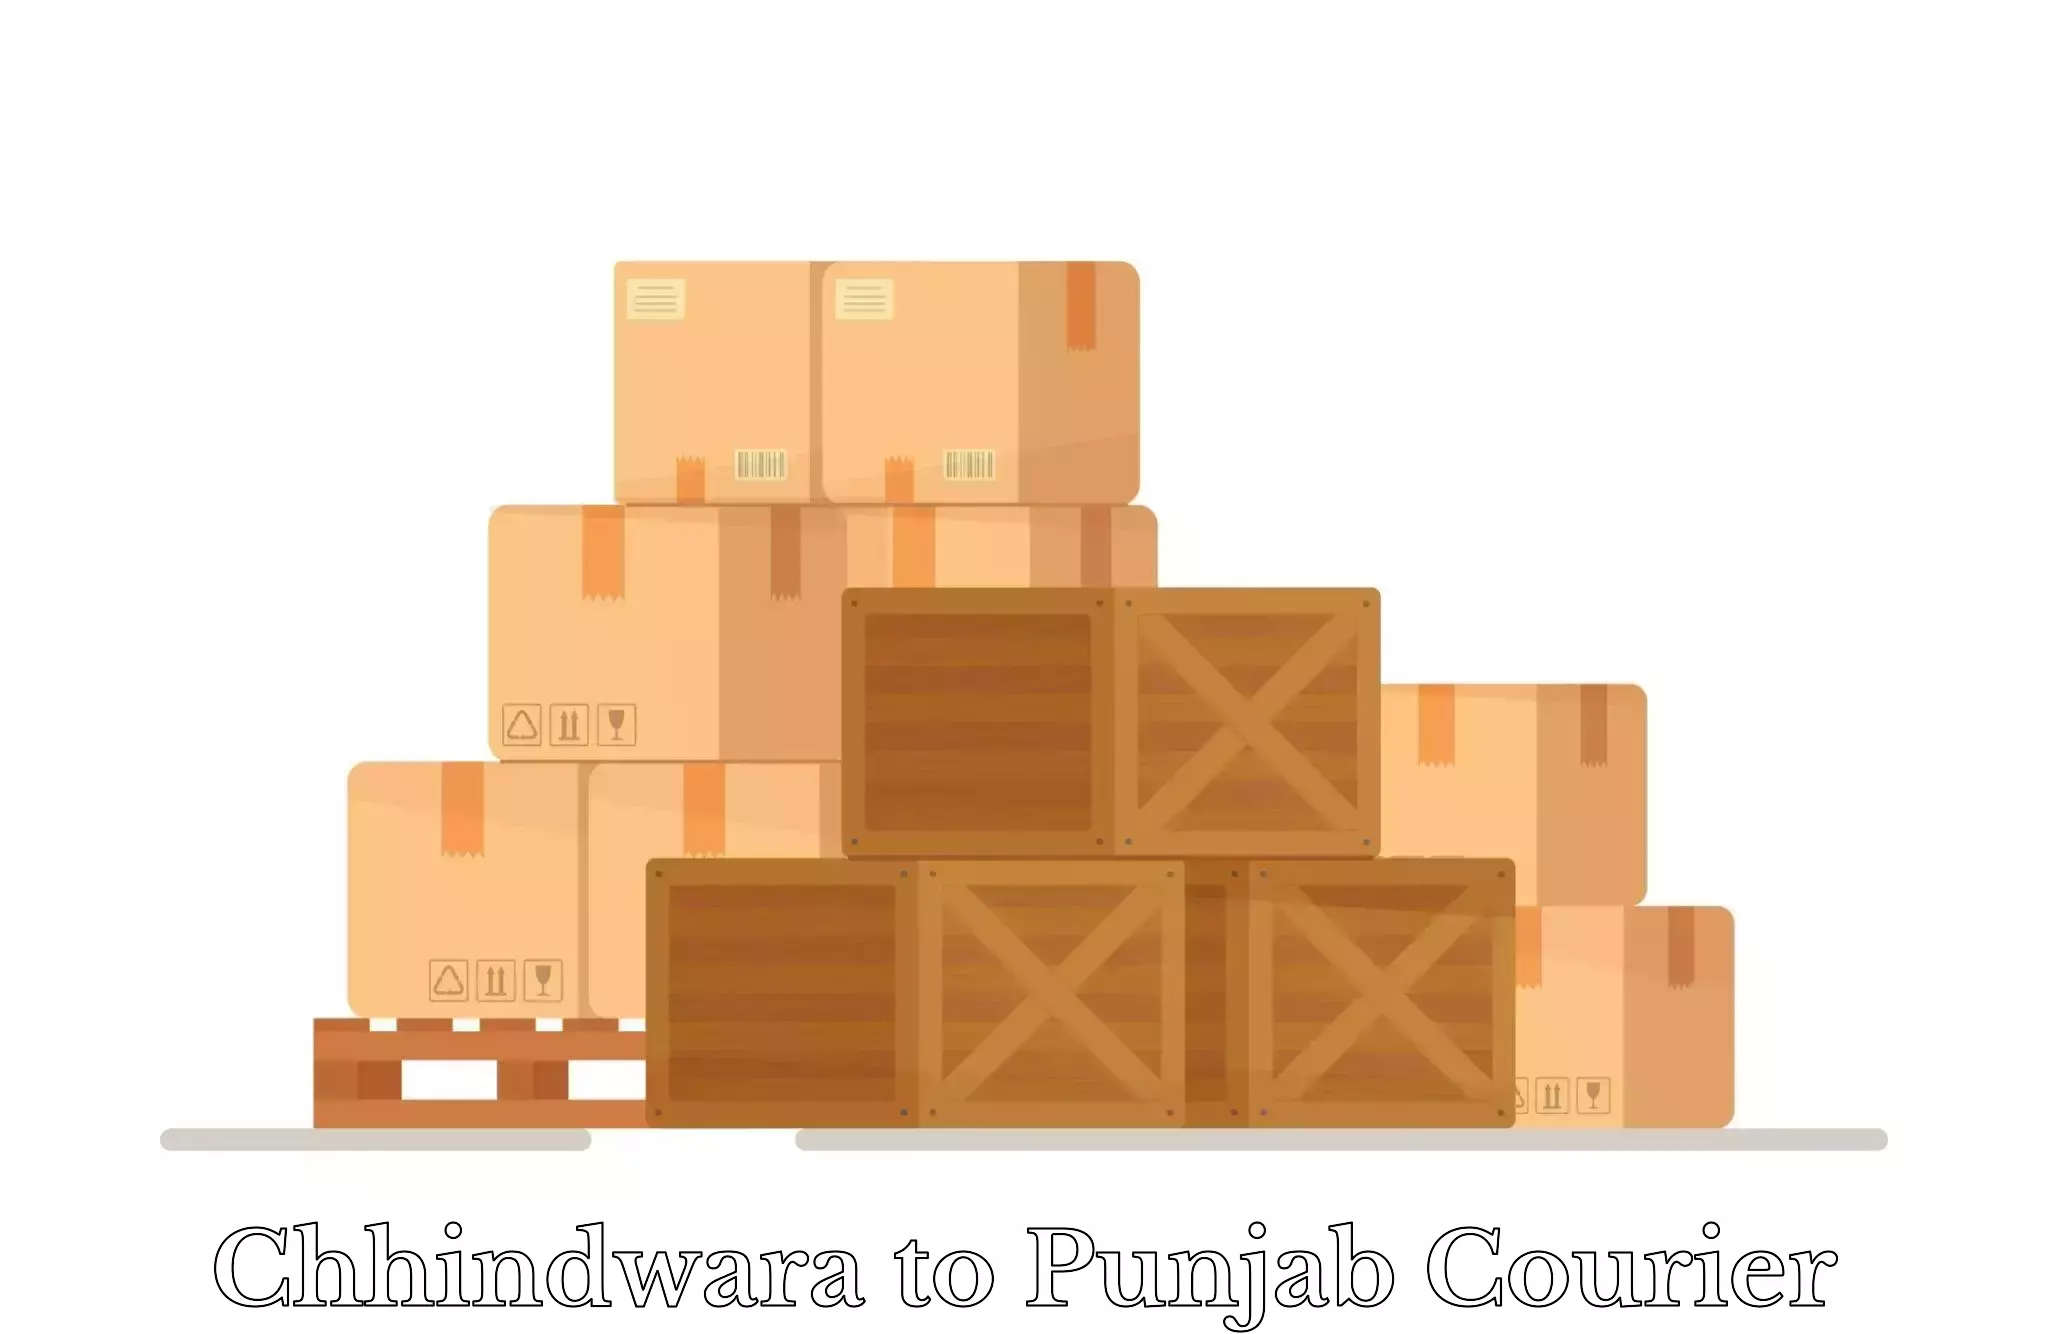 Luggage transport guidelines Chhindwara to Jalandhar